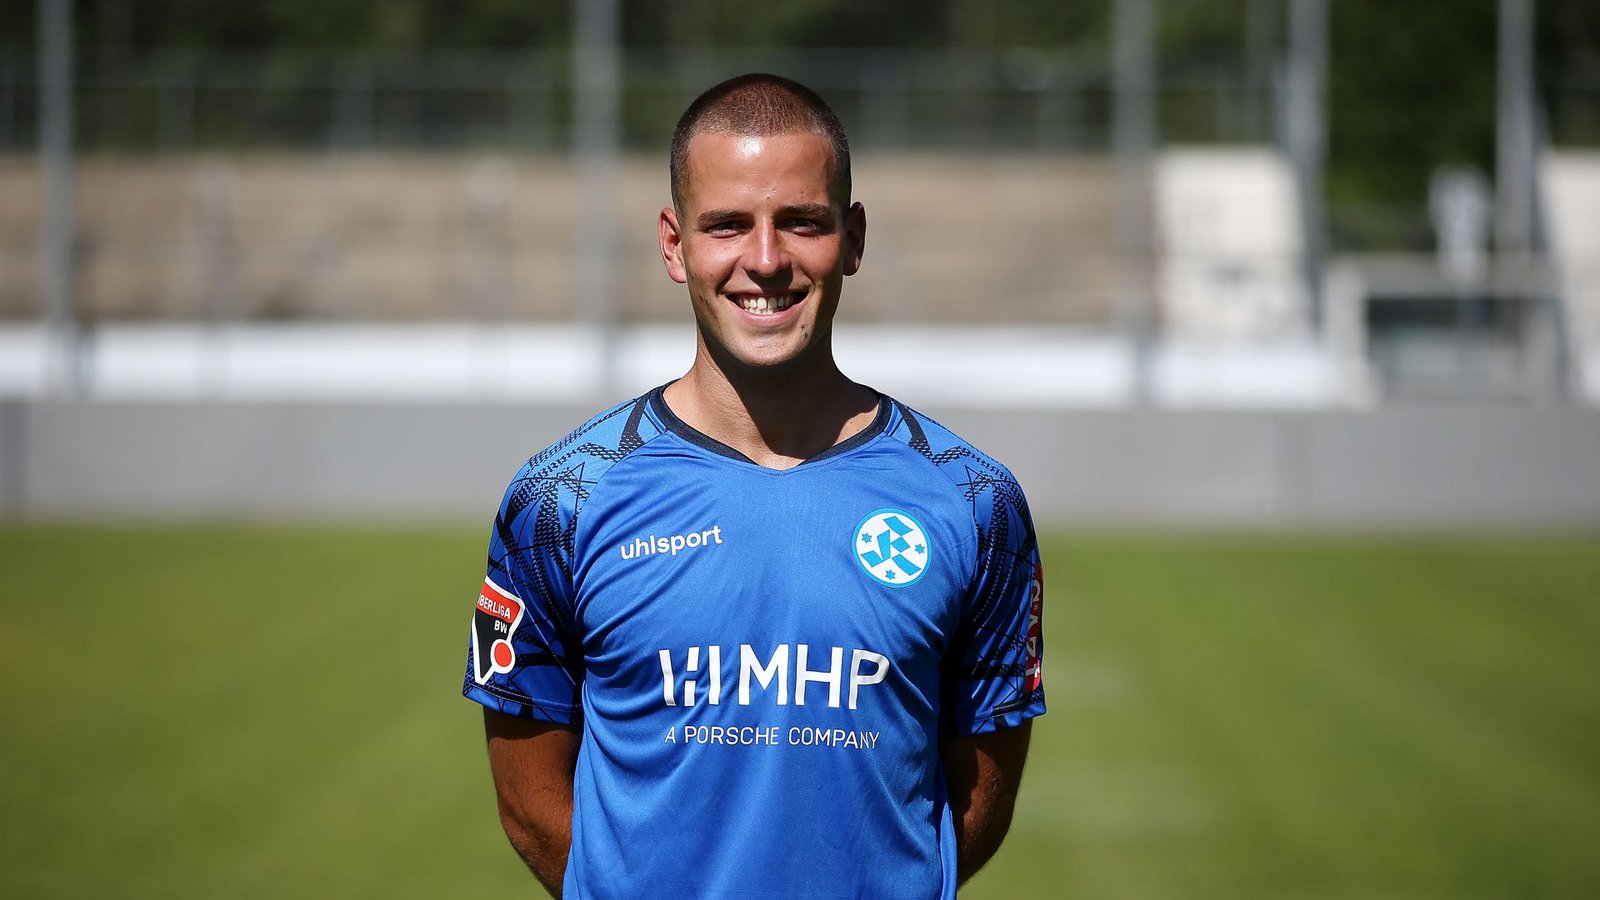 Mittelfeldspieler Ivo Colkic (23) geht in seine zweite Saison bei den Kickers.Foto: Pressefoto Baumann/Alexander Keppler